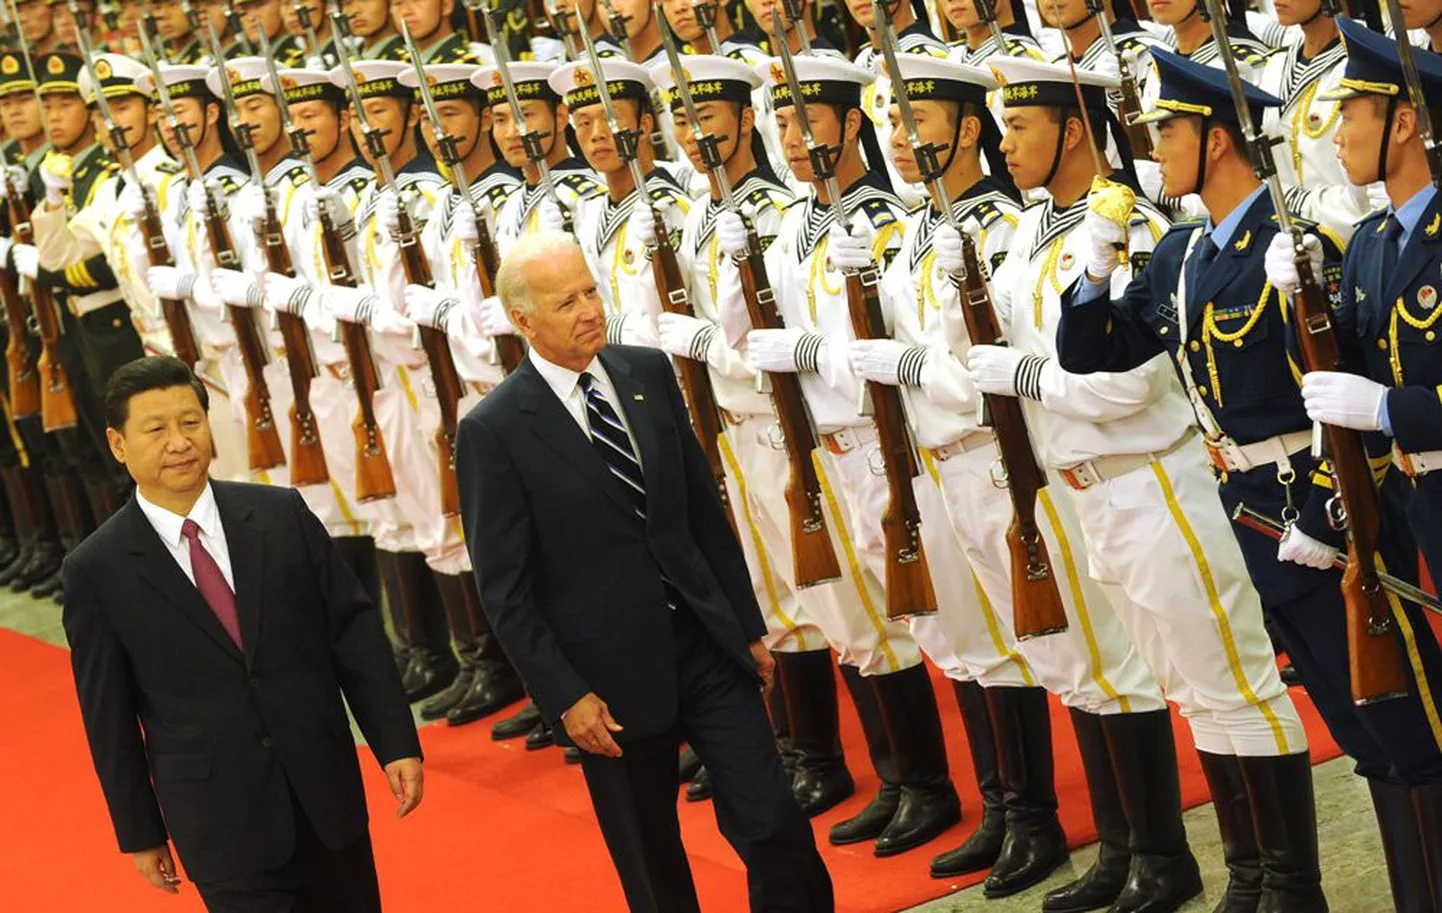 Hiina asepresident Xi Jinping, tema USA ametivend Joe Biden ja Hiina sõjaväelaste auvalve eile Pekingis.